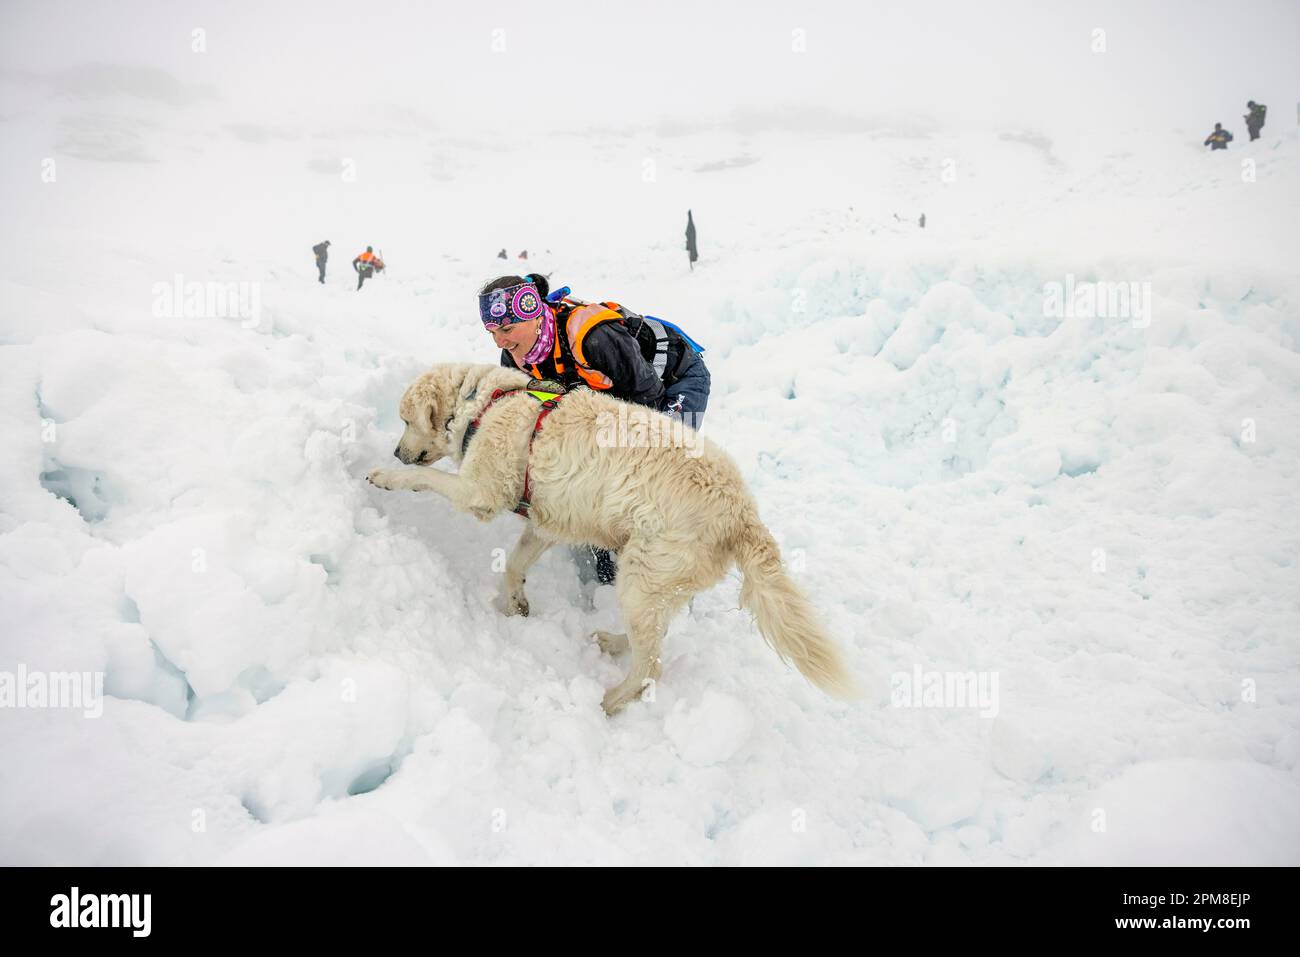 Frankreich, Haute Savoie, Flaine, Training von Lawinenhunden, ein falsches Opfer wird in einem Iglu begraben, dessen Öffnung mit Schnee blockiert ist, die Hunde müssen die begrabene Person finden, sobald der Hund etwas gespürt hat, markiert er den Ort durch Schneekratzen und Bellen Stockfoto